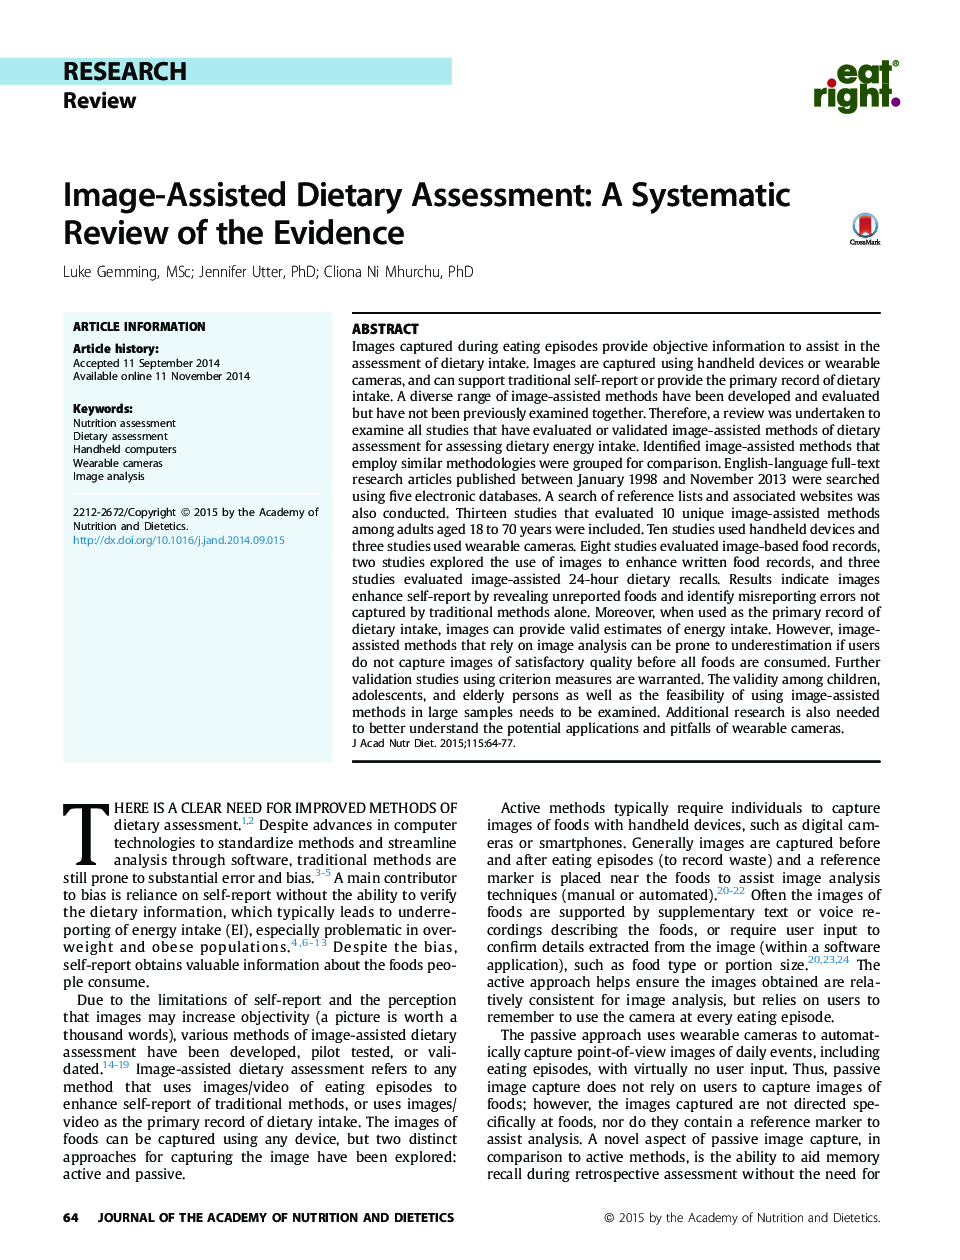 ارزیابی رژیم غذایی به کمک تصویر: یک بررسی سیستماتیک شواهد